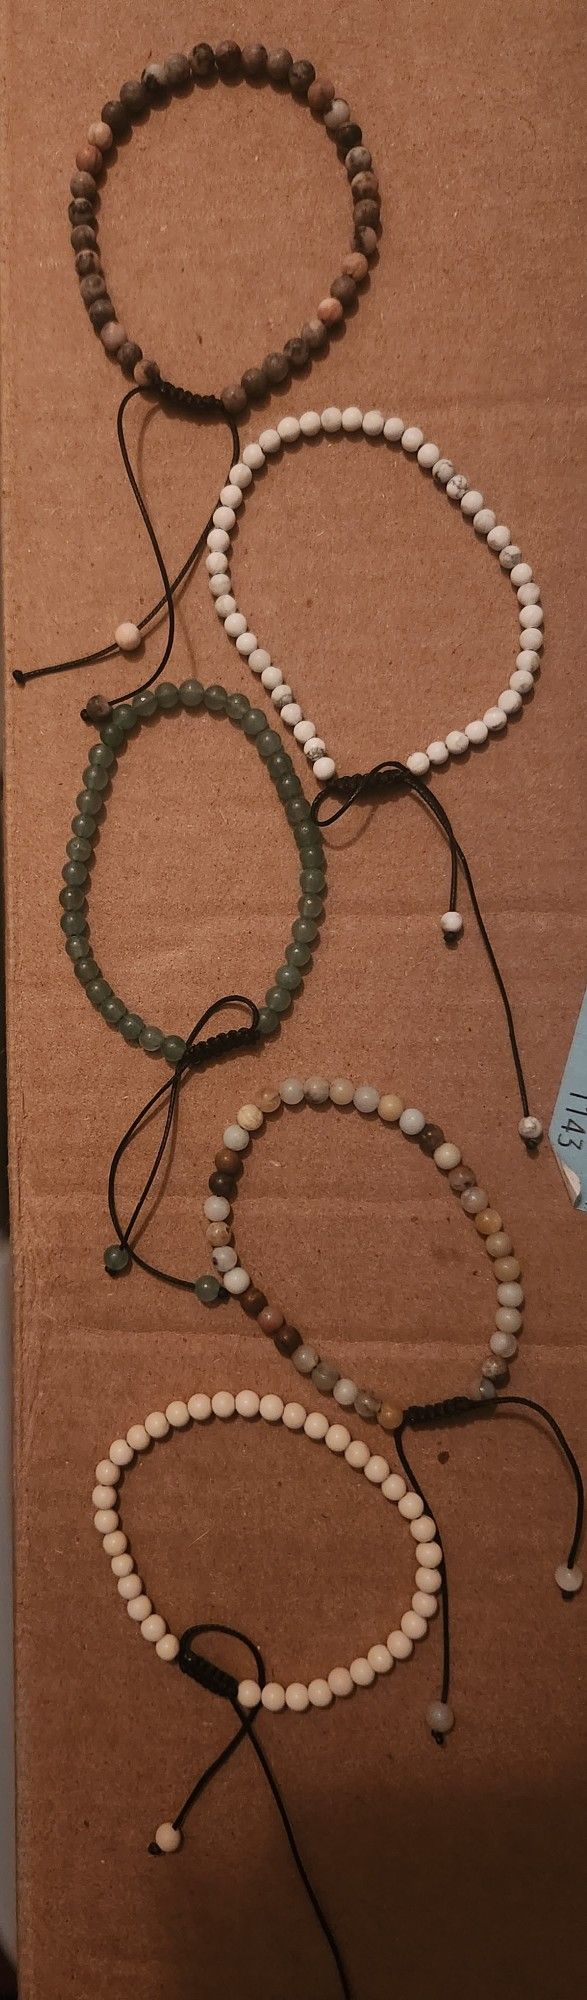 Bead Bracelets Jewelry 